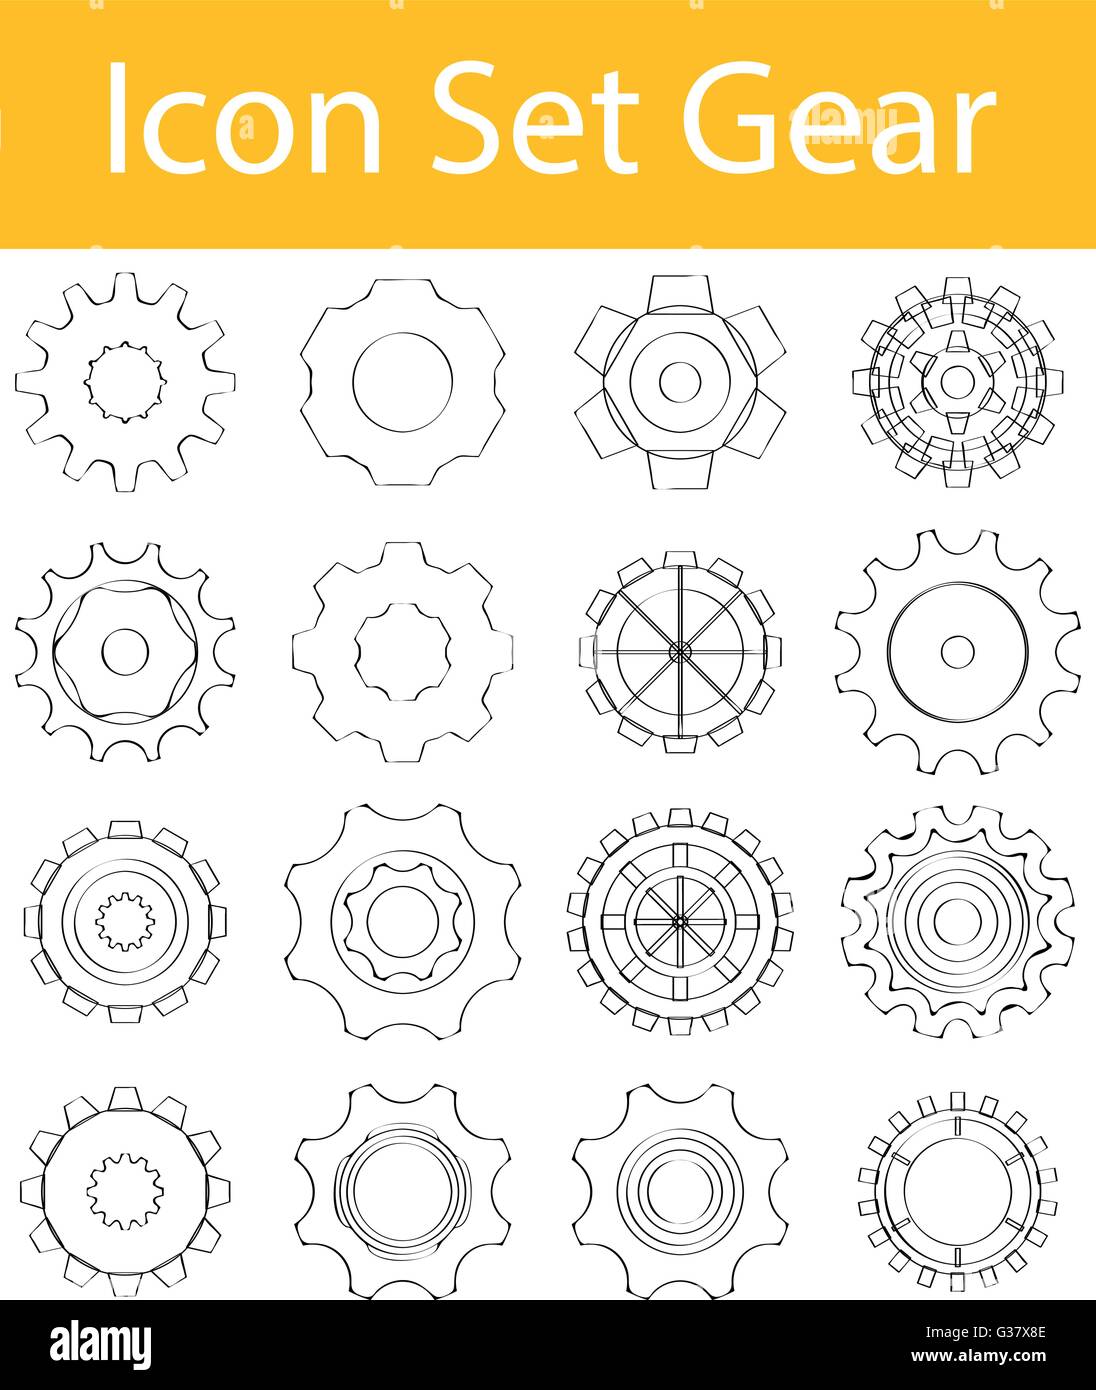 Appelée Doodle bordée Icon Set Gear I avec 16 icônes pour l'utilisation créative en design graphique Illustration de Vecteur